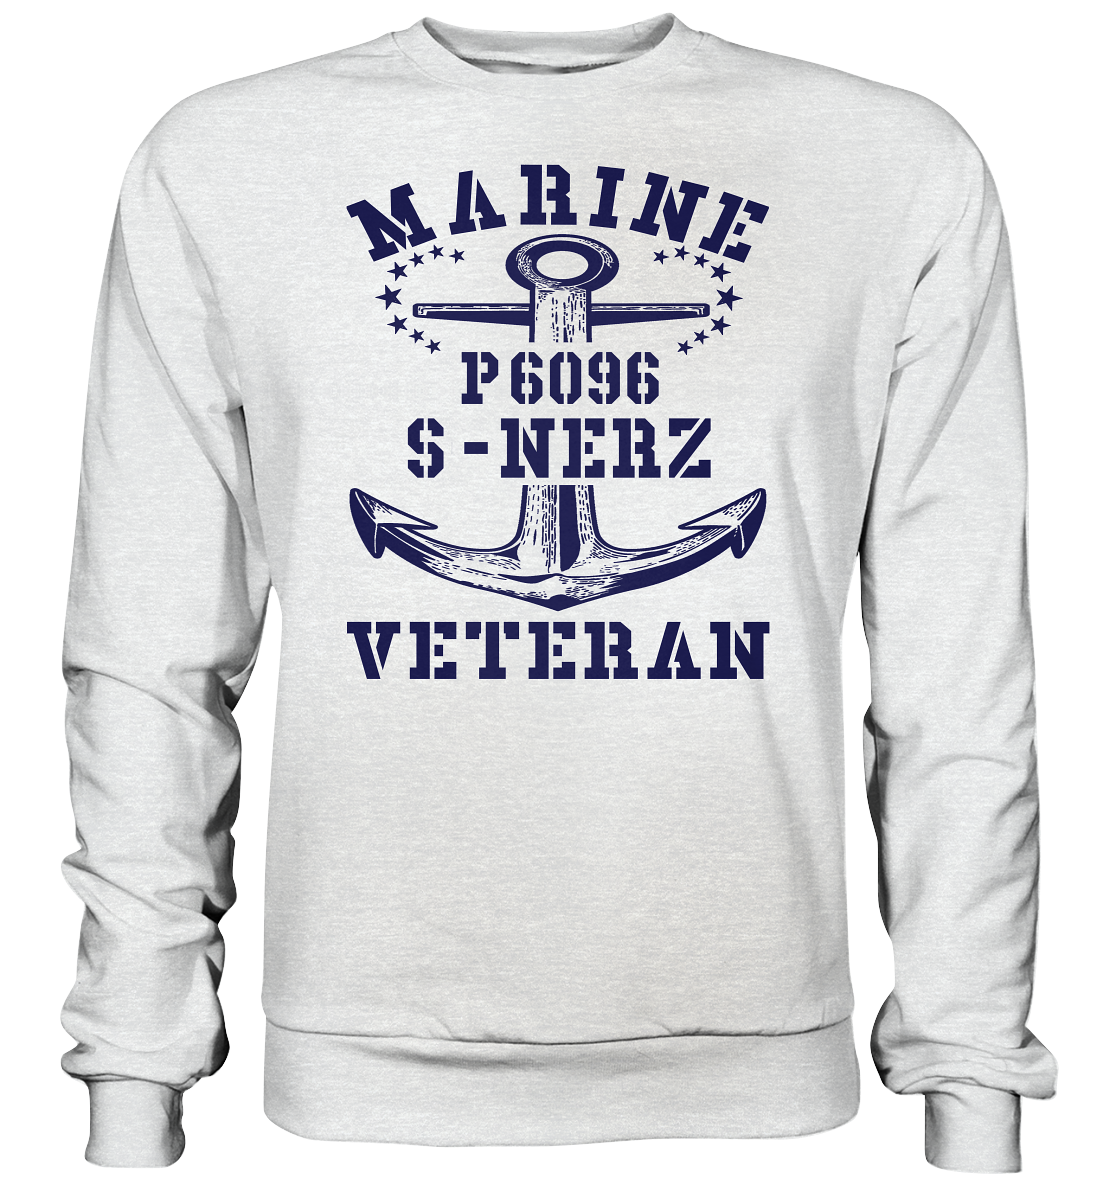 P6096 S-NERZ Marine Veteran - Premium Sweatshirt